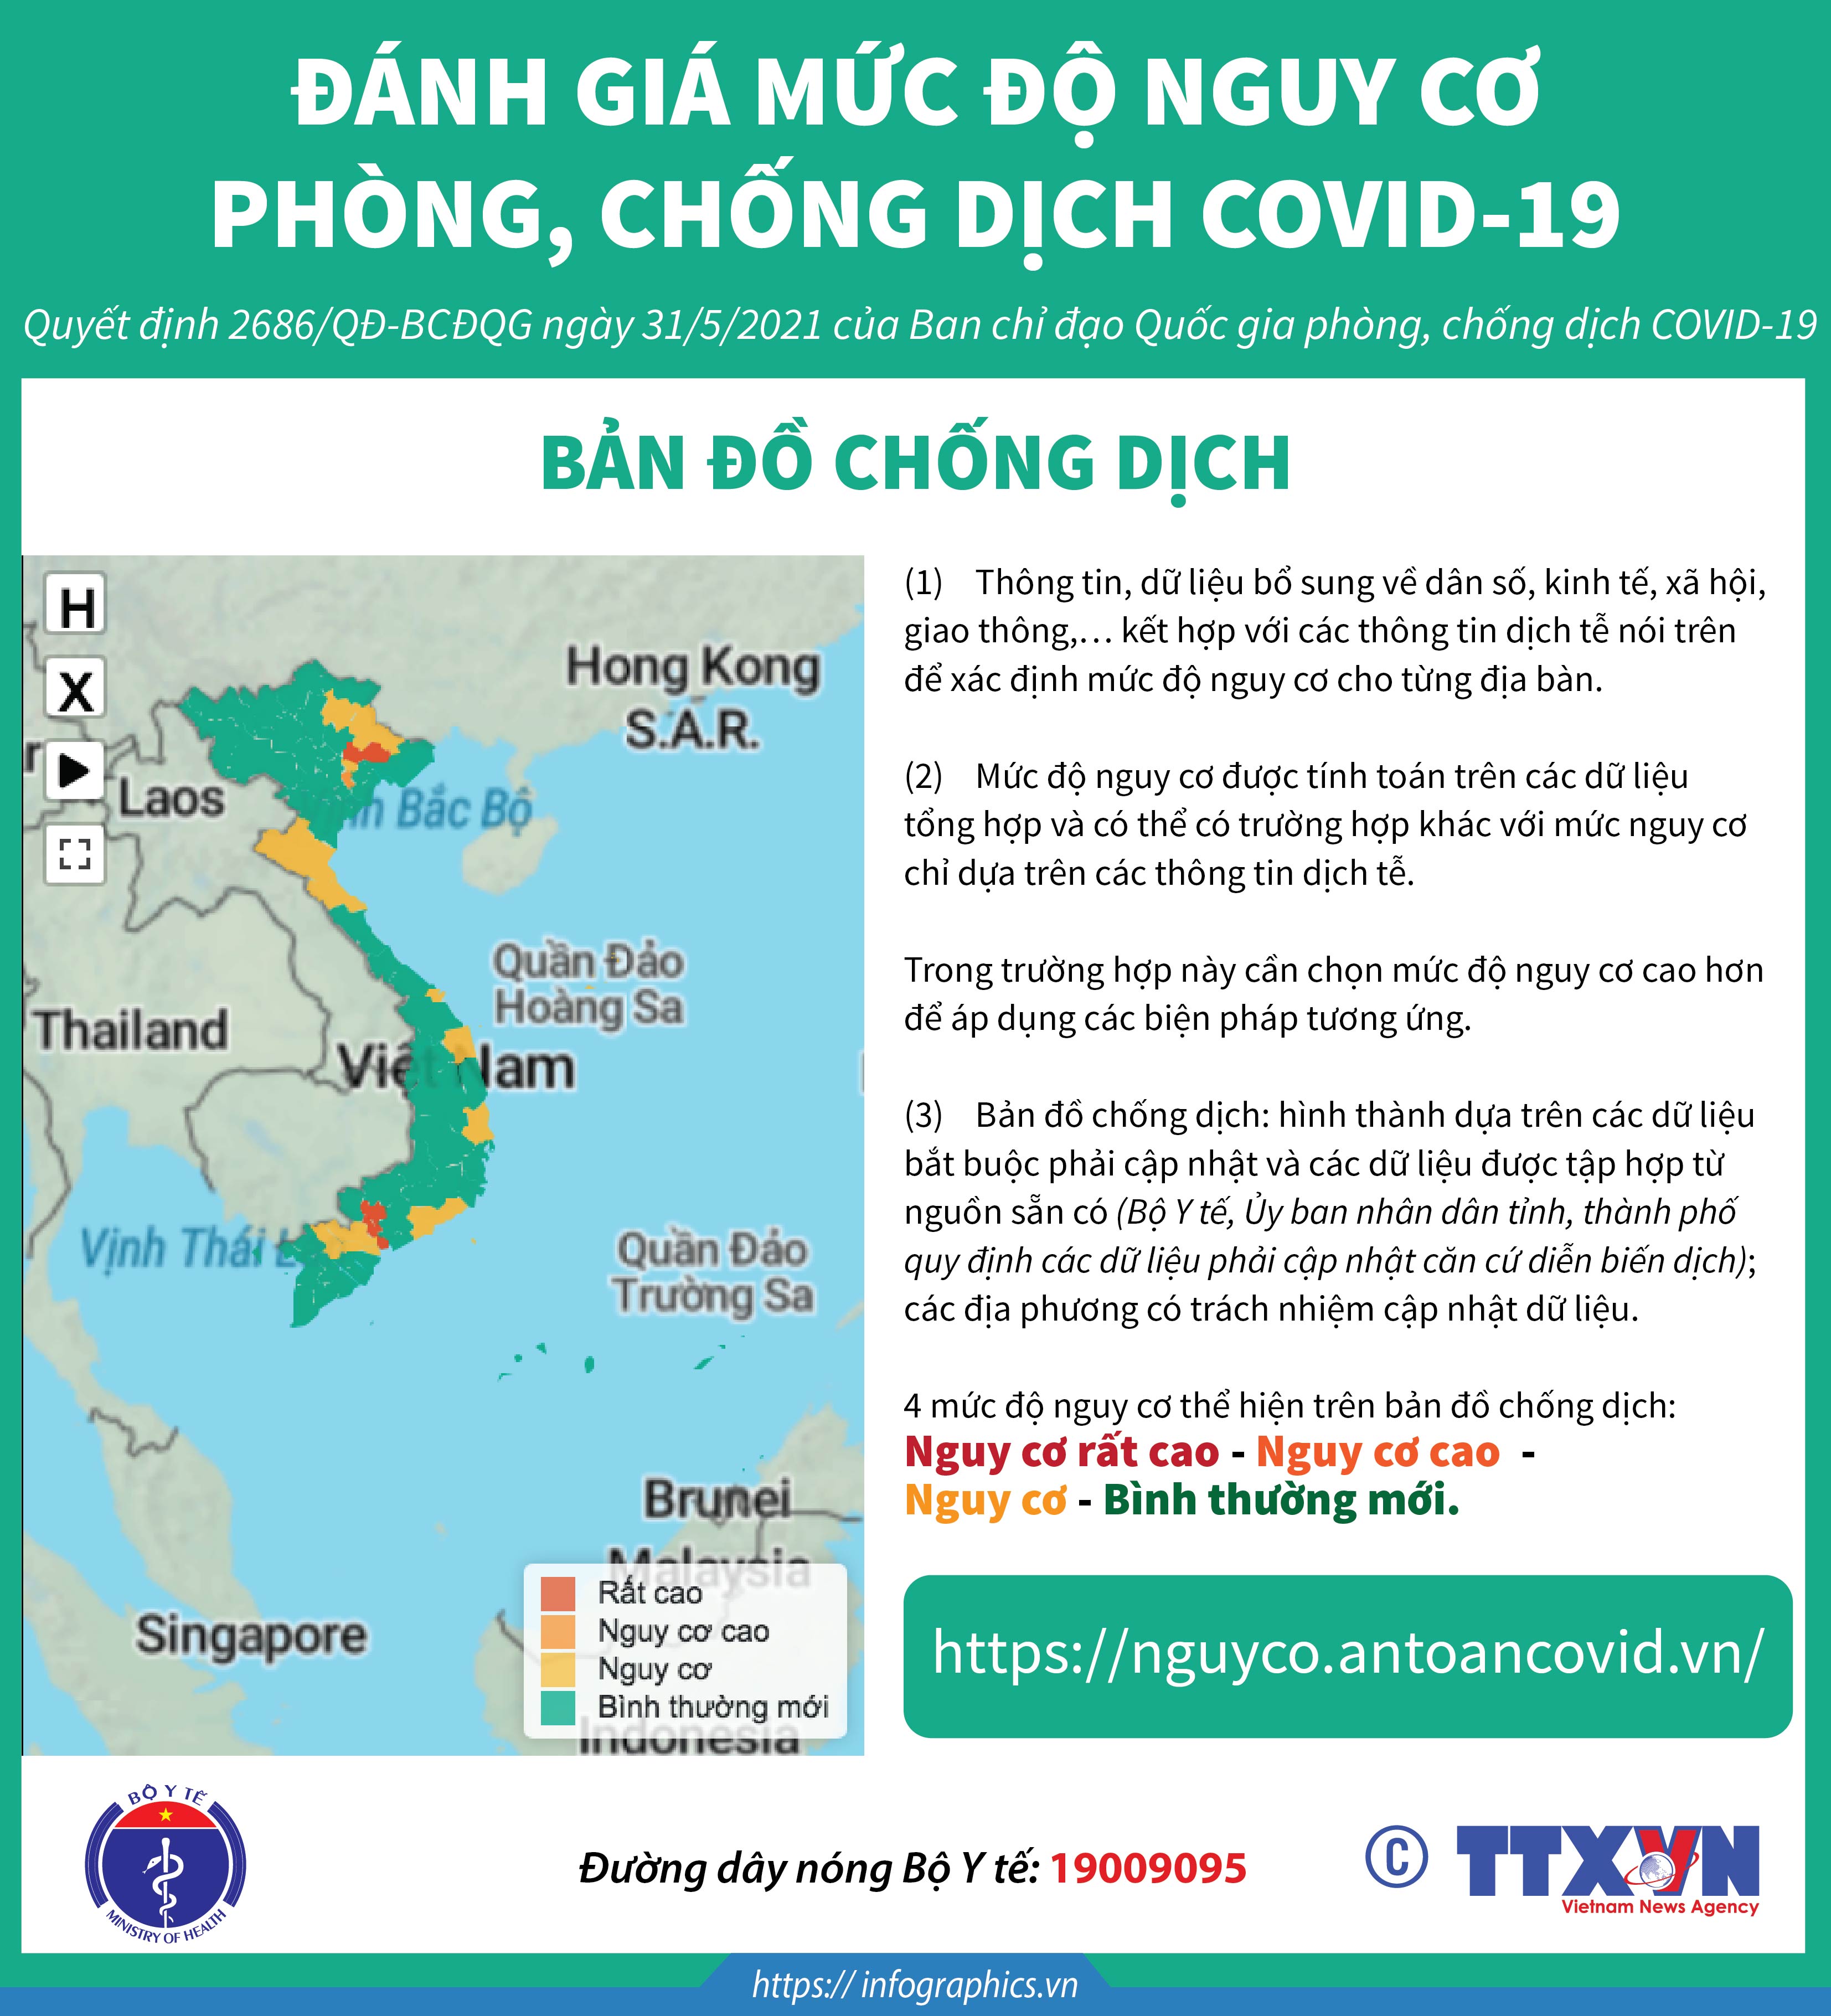 Nguy cơ COVID-19 Bình Định:
Tuy dịch bệnh COVID-19 đã được kiểm soát tốt tại Bình Định, nhưng nguy cơ tái phát vẫn có thể xảy ra. Hãy cùng nhau thực hiện các biện pháp phòng chống dịch bệnh để đảm bảo an toàn cho bản thân và cộng đồng.